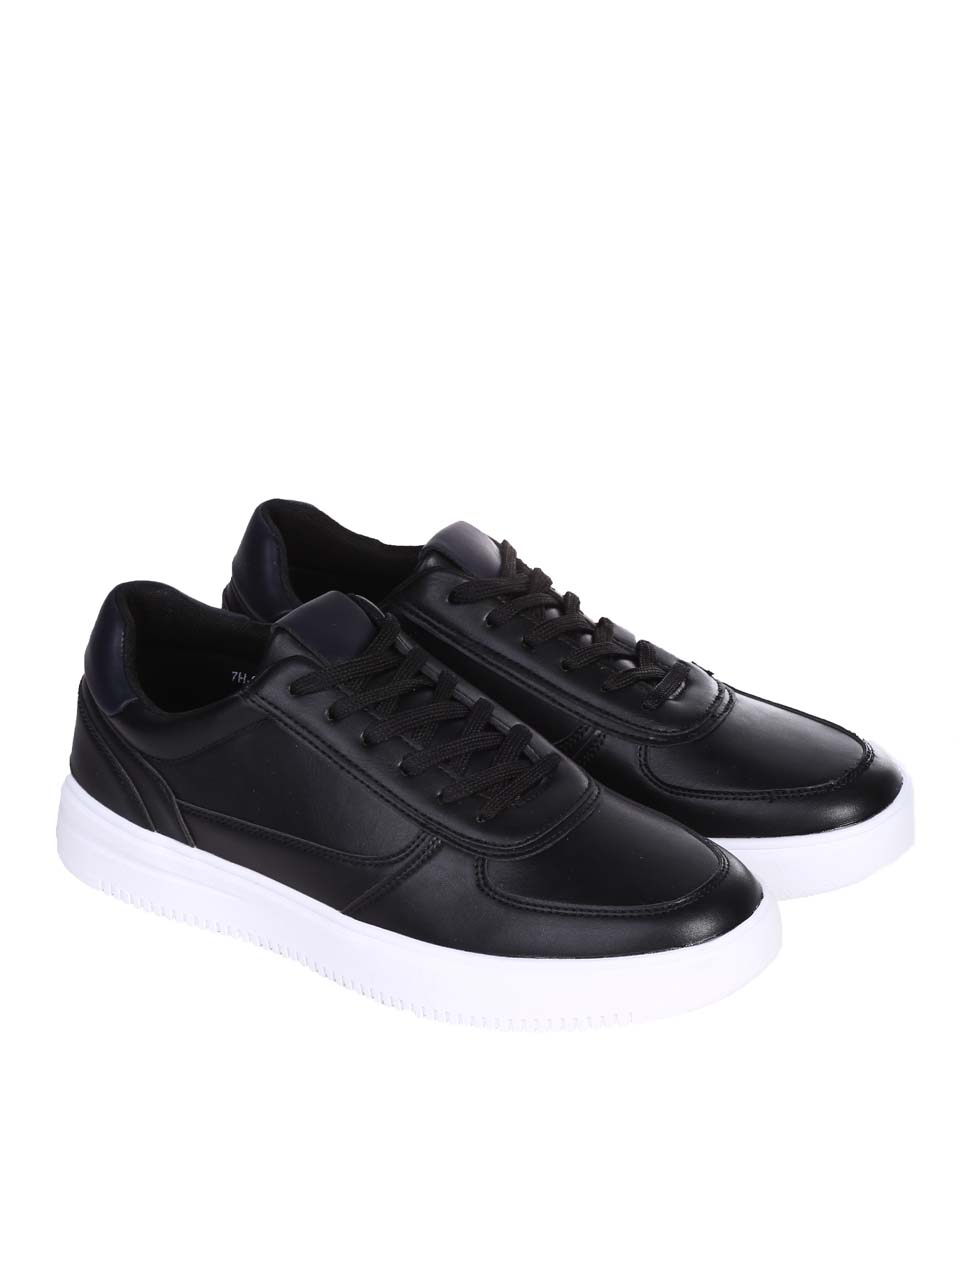 Ежедневни мъжки комфортни обувки в черно 7H-24192 black